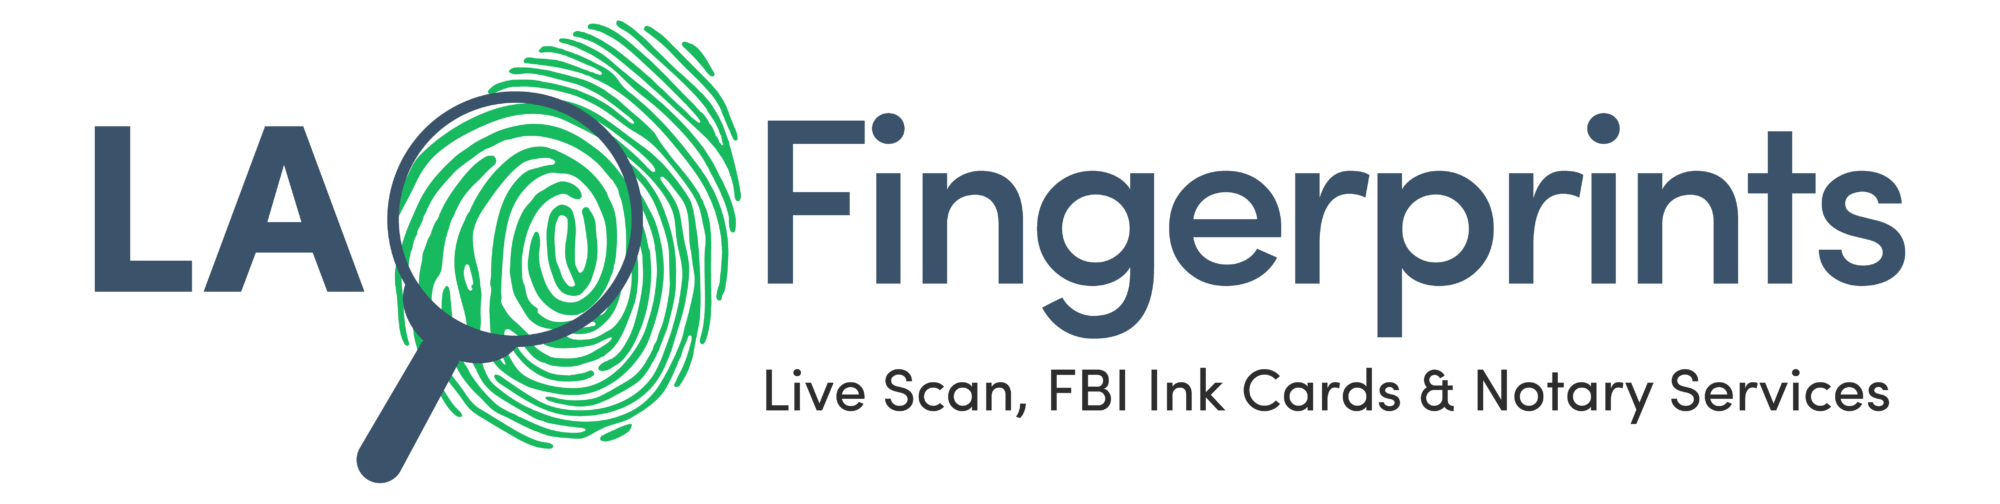 LA Fingerprints Inc Adds More Services, Announces More Live Scan Solutions